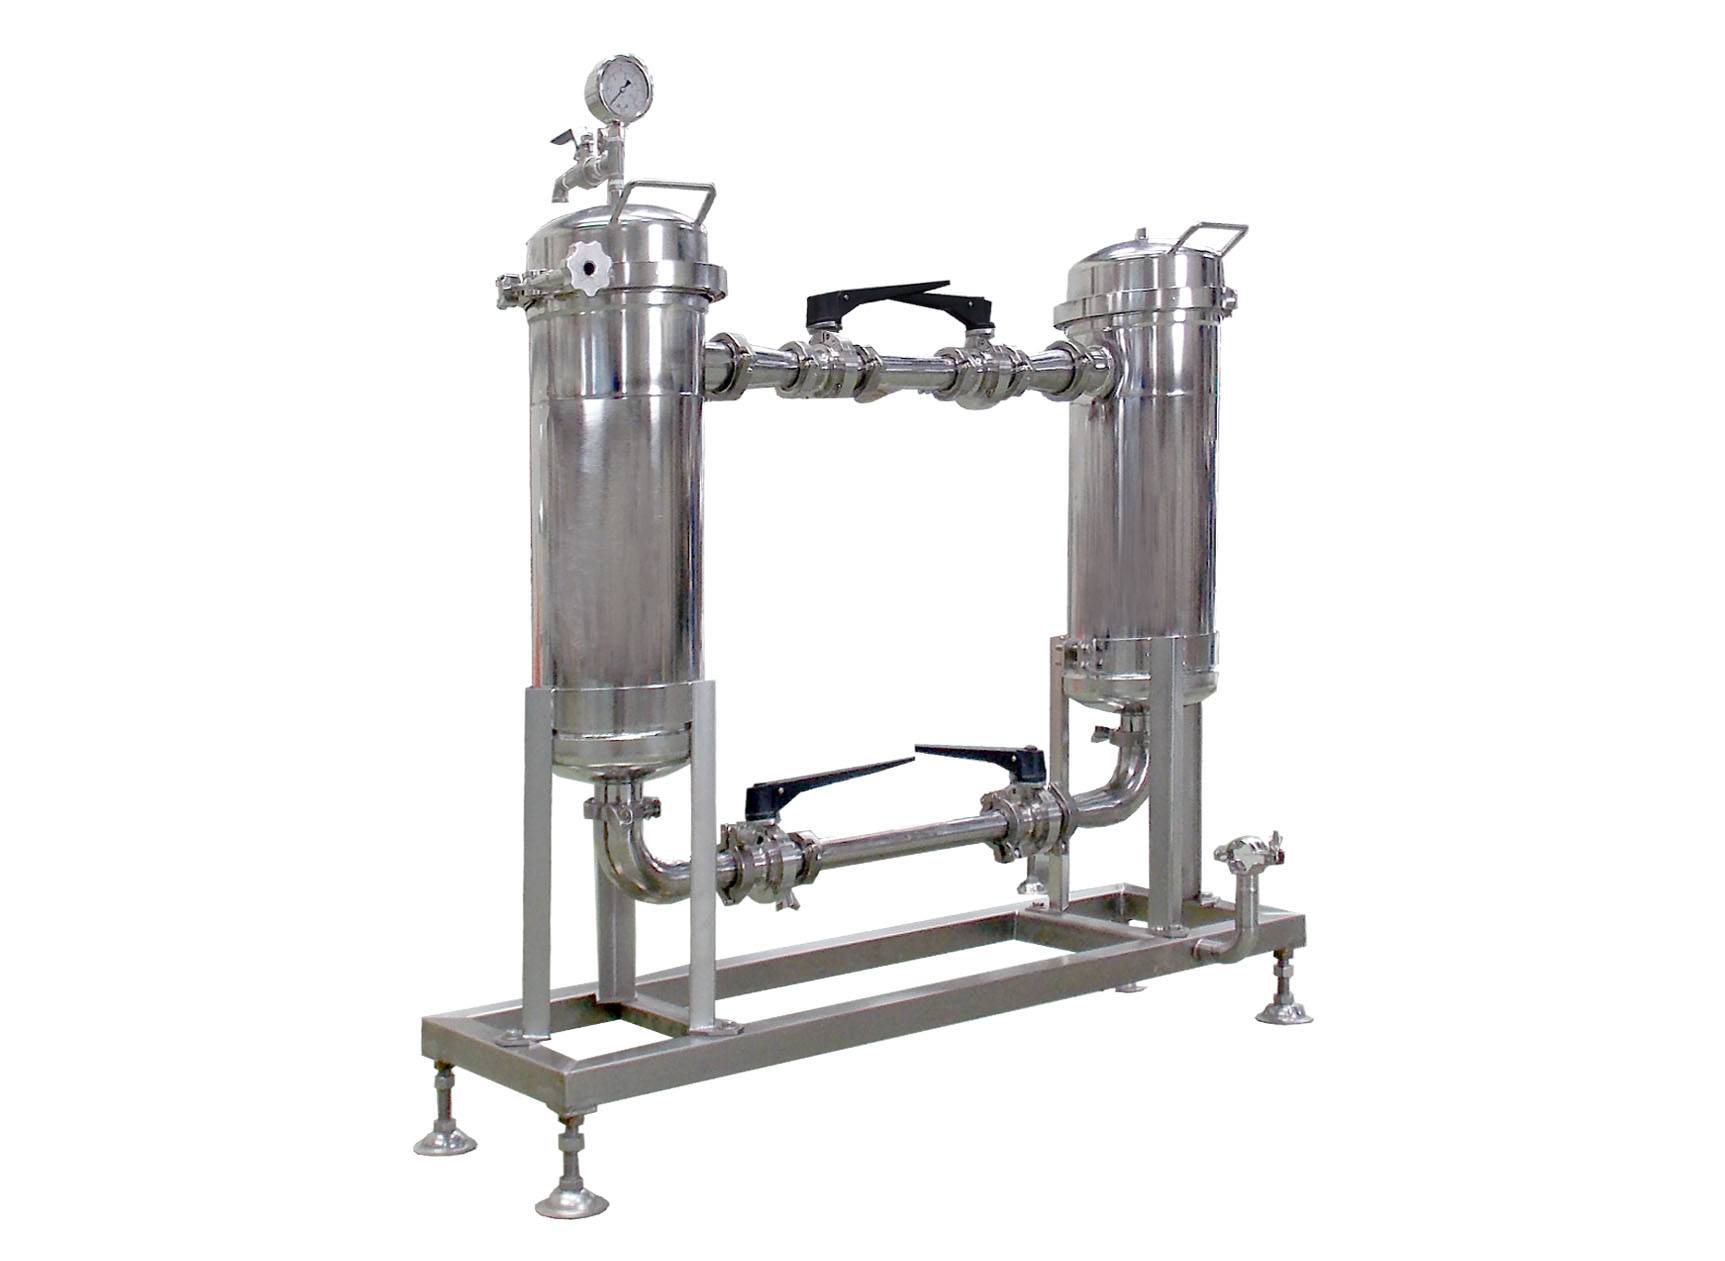 مرشح حليب الصويا هو واحد من الآلات في خط إنتاج حليب الصويا الطازج.